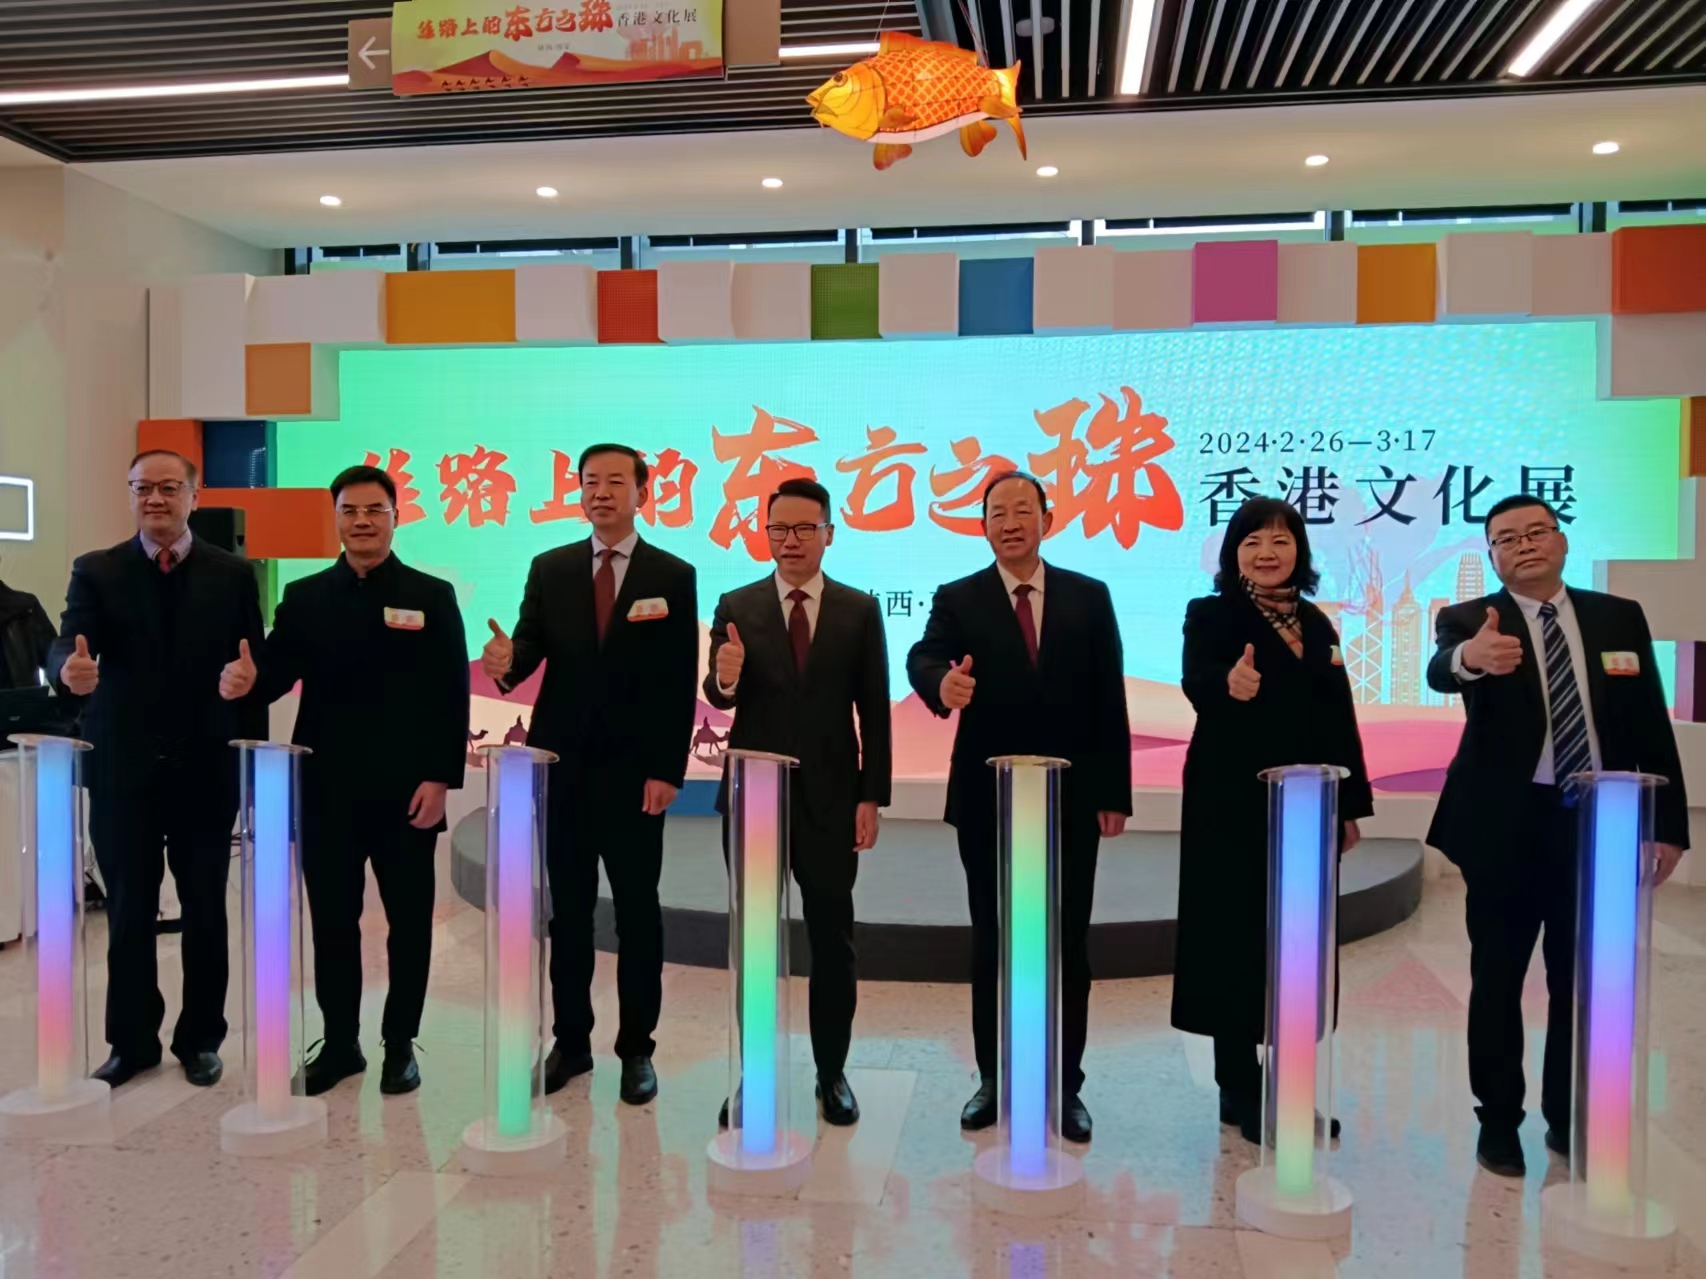 促陝港文化交流 「絲路上的東方之珠-香港文化展」西安開幕